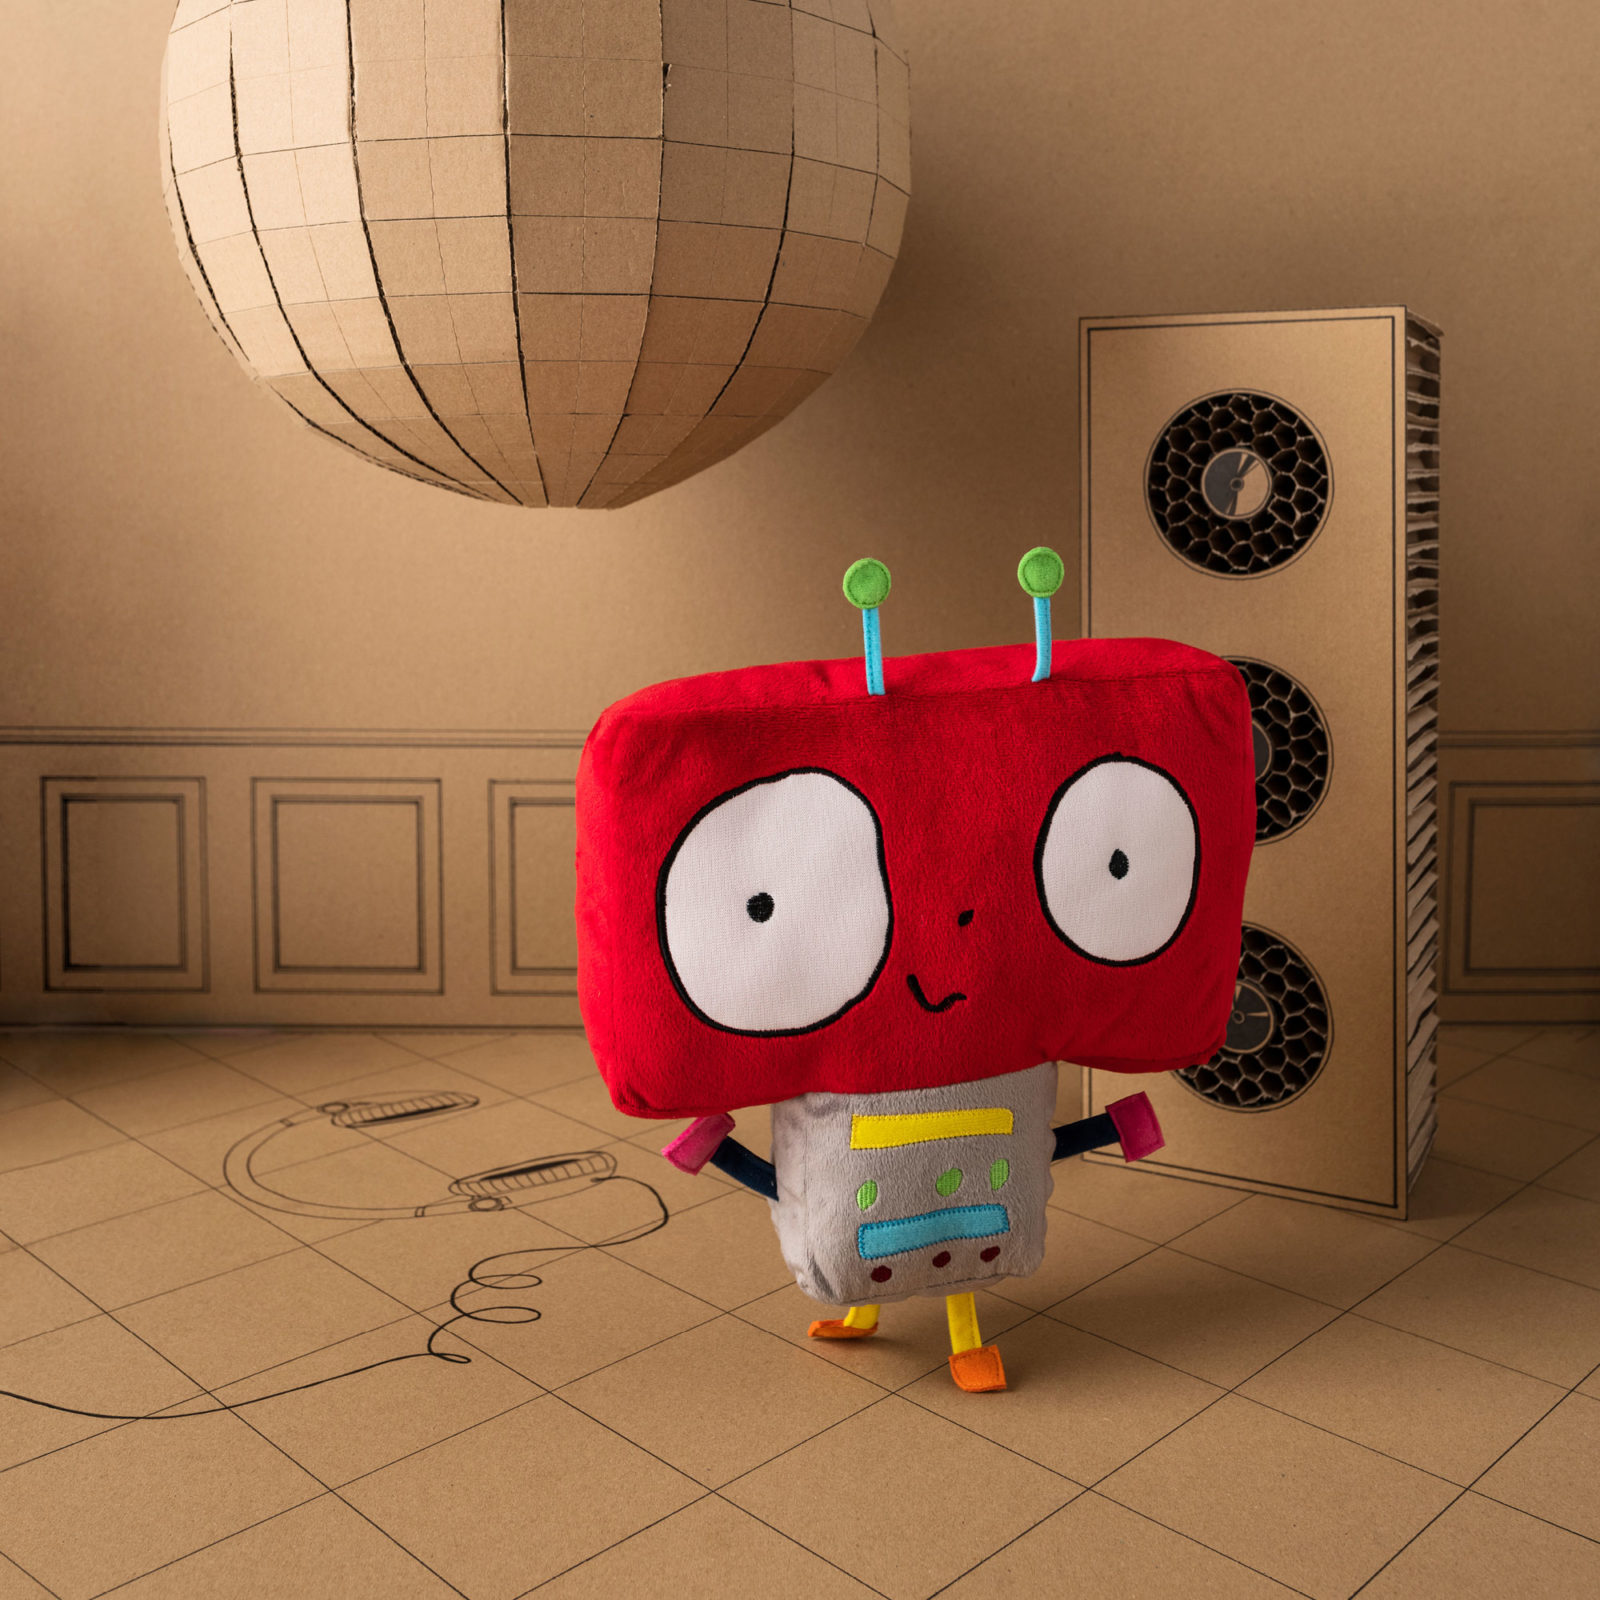 En mjuk stoppad leksaksrobot med brett rött huvud och liten kropp.